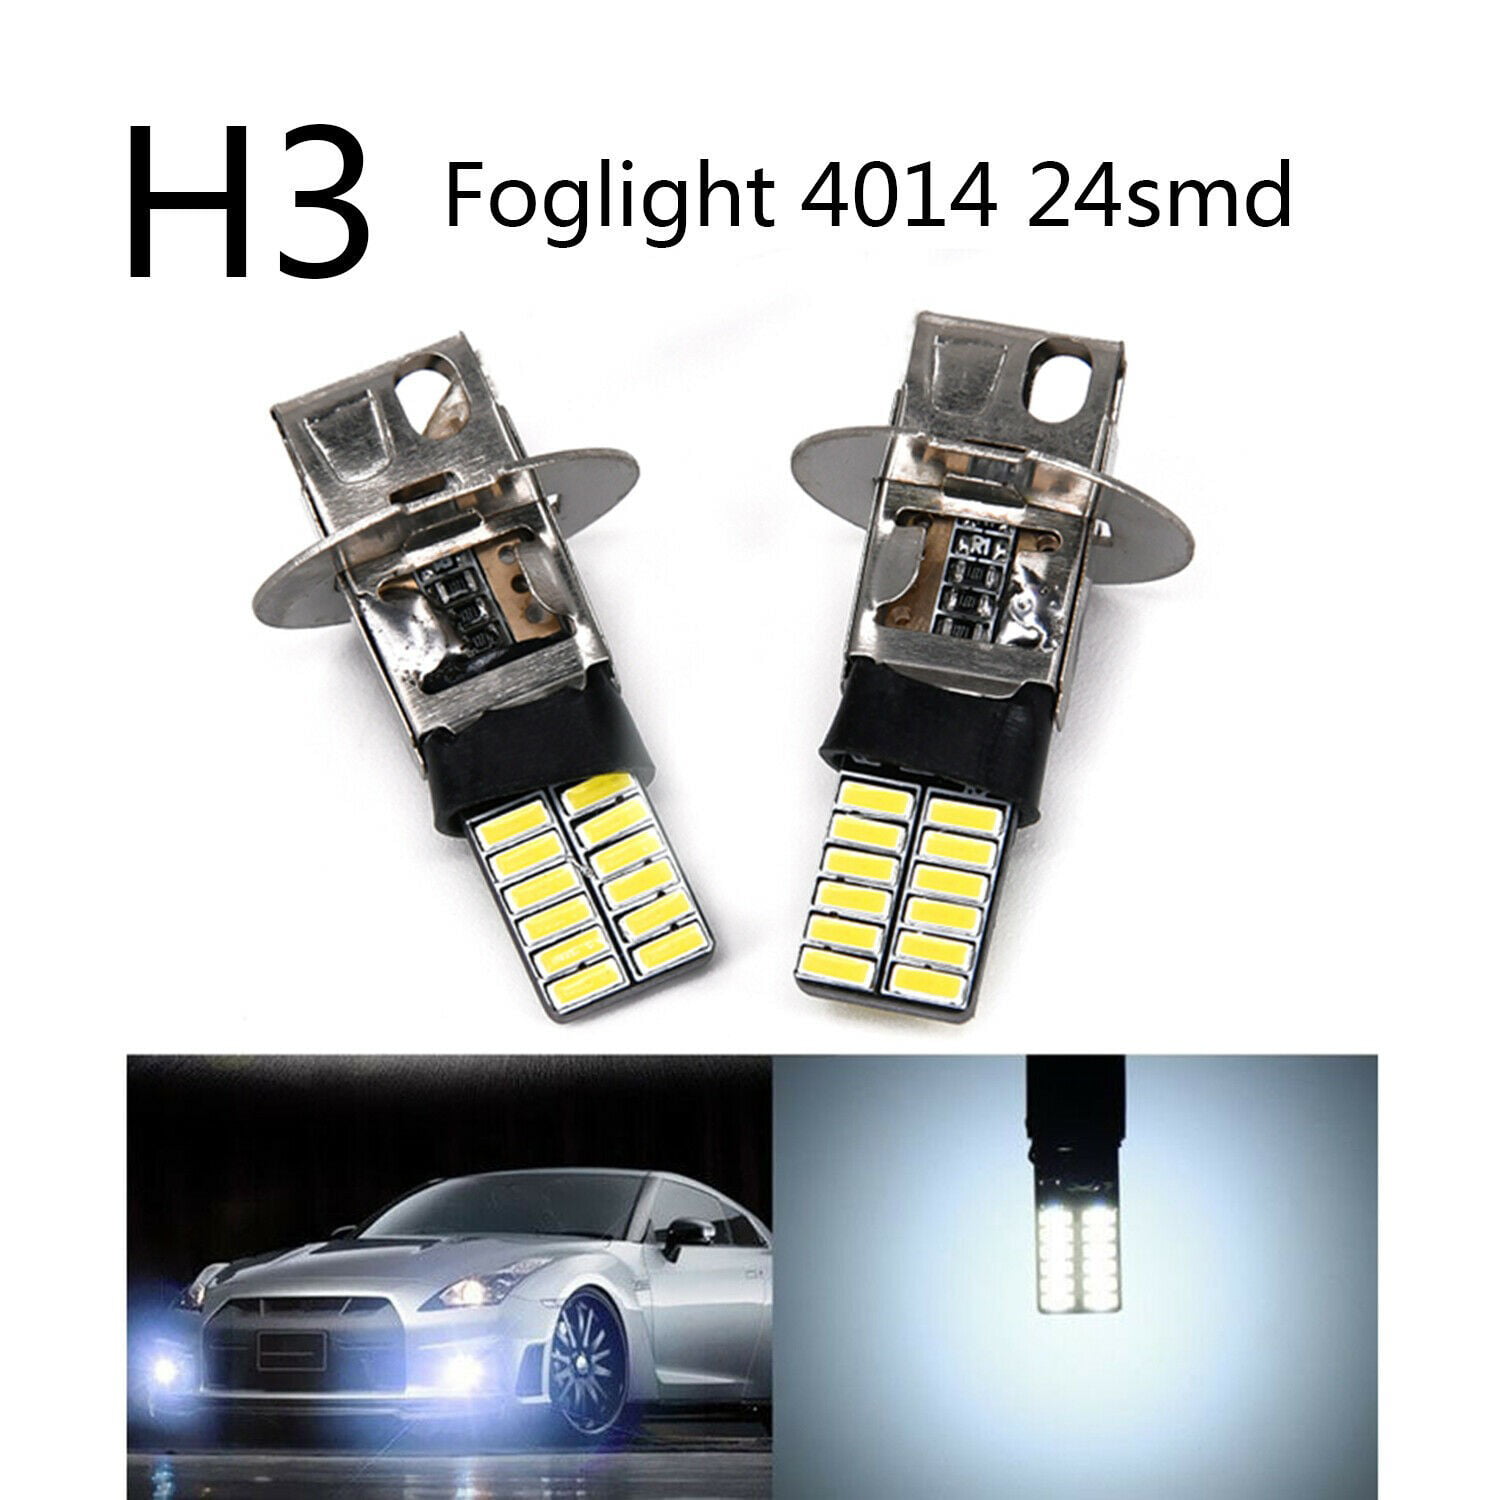 2x H1/H3 6500K 24SMD 4014 LED High Power Bulb Fog Light Driving Lamp DC 12V